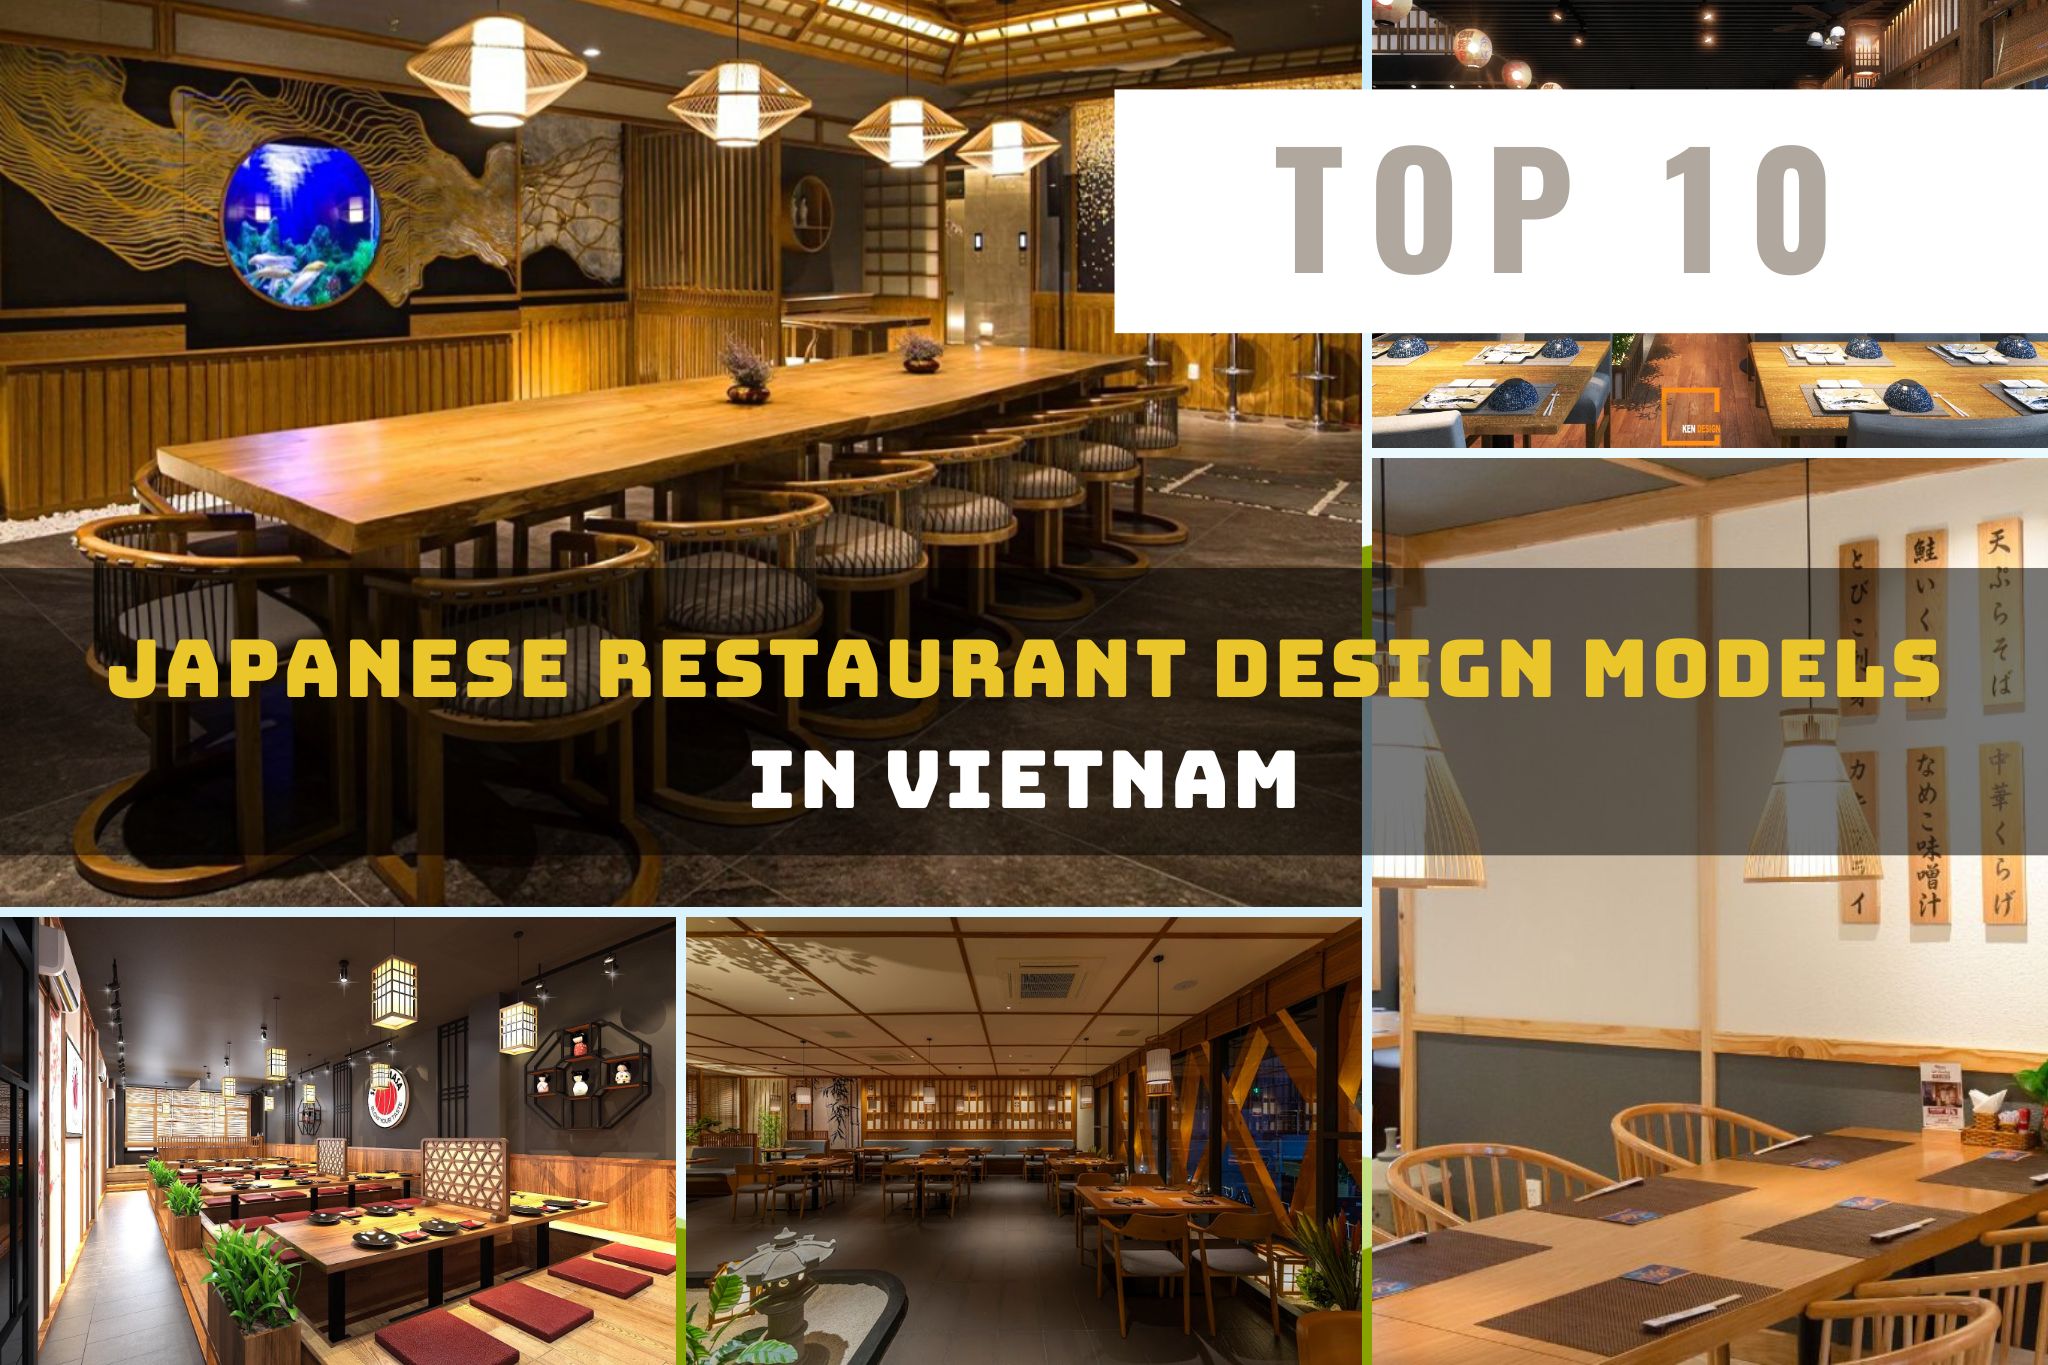 ベトナムにおけるトップ10の日本レストランデザイン - 10 Japanese Restaurant Design Models in Vietnam